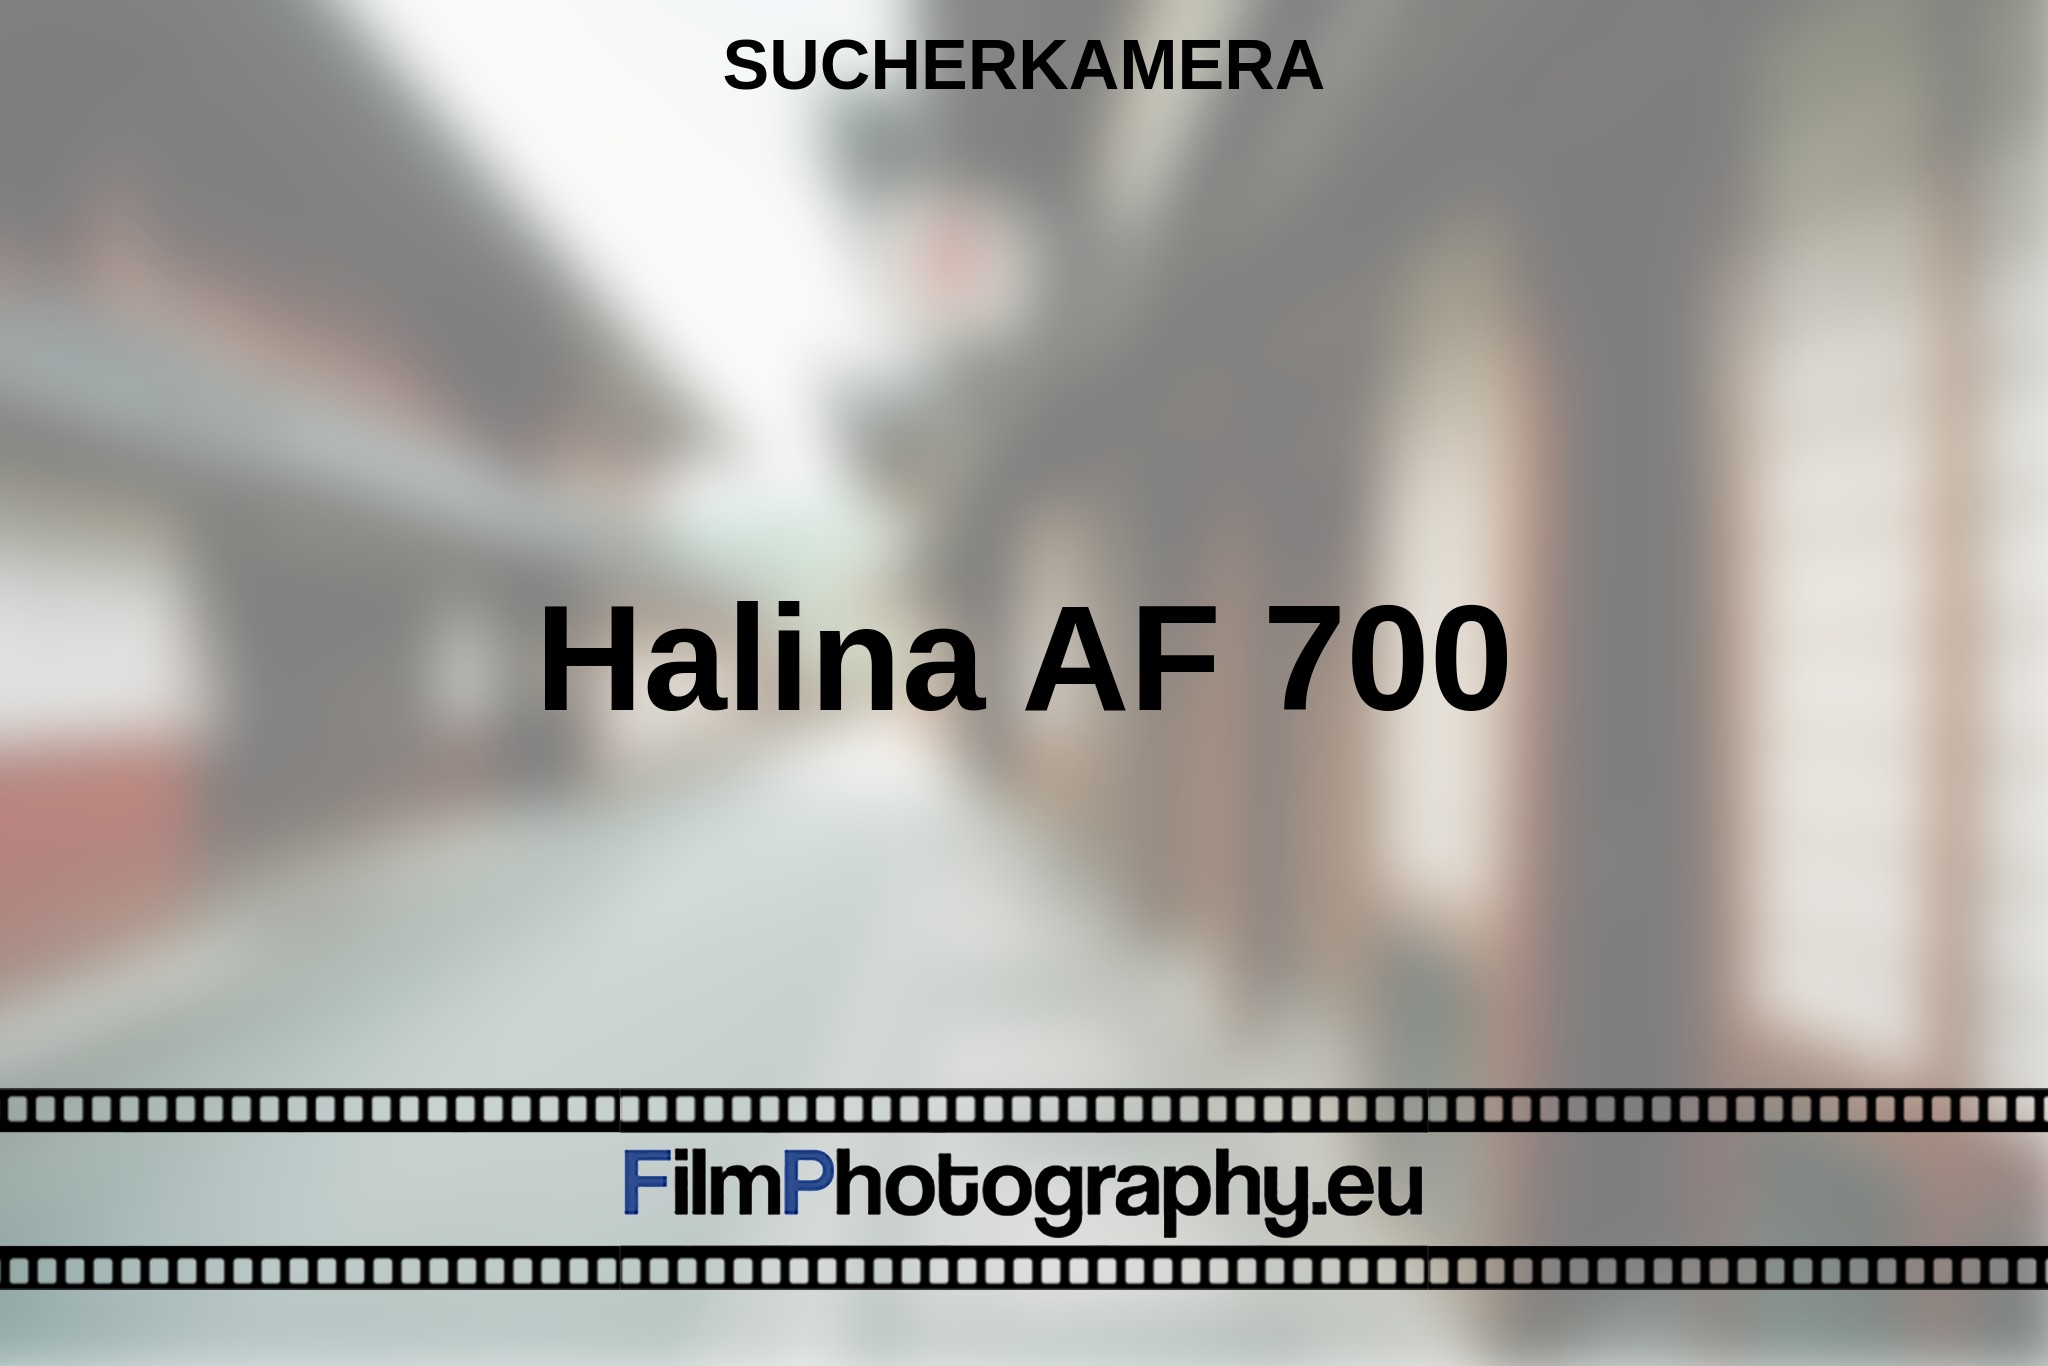 halina-af-700-sucherkamera-bnv.jpg